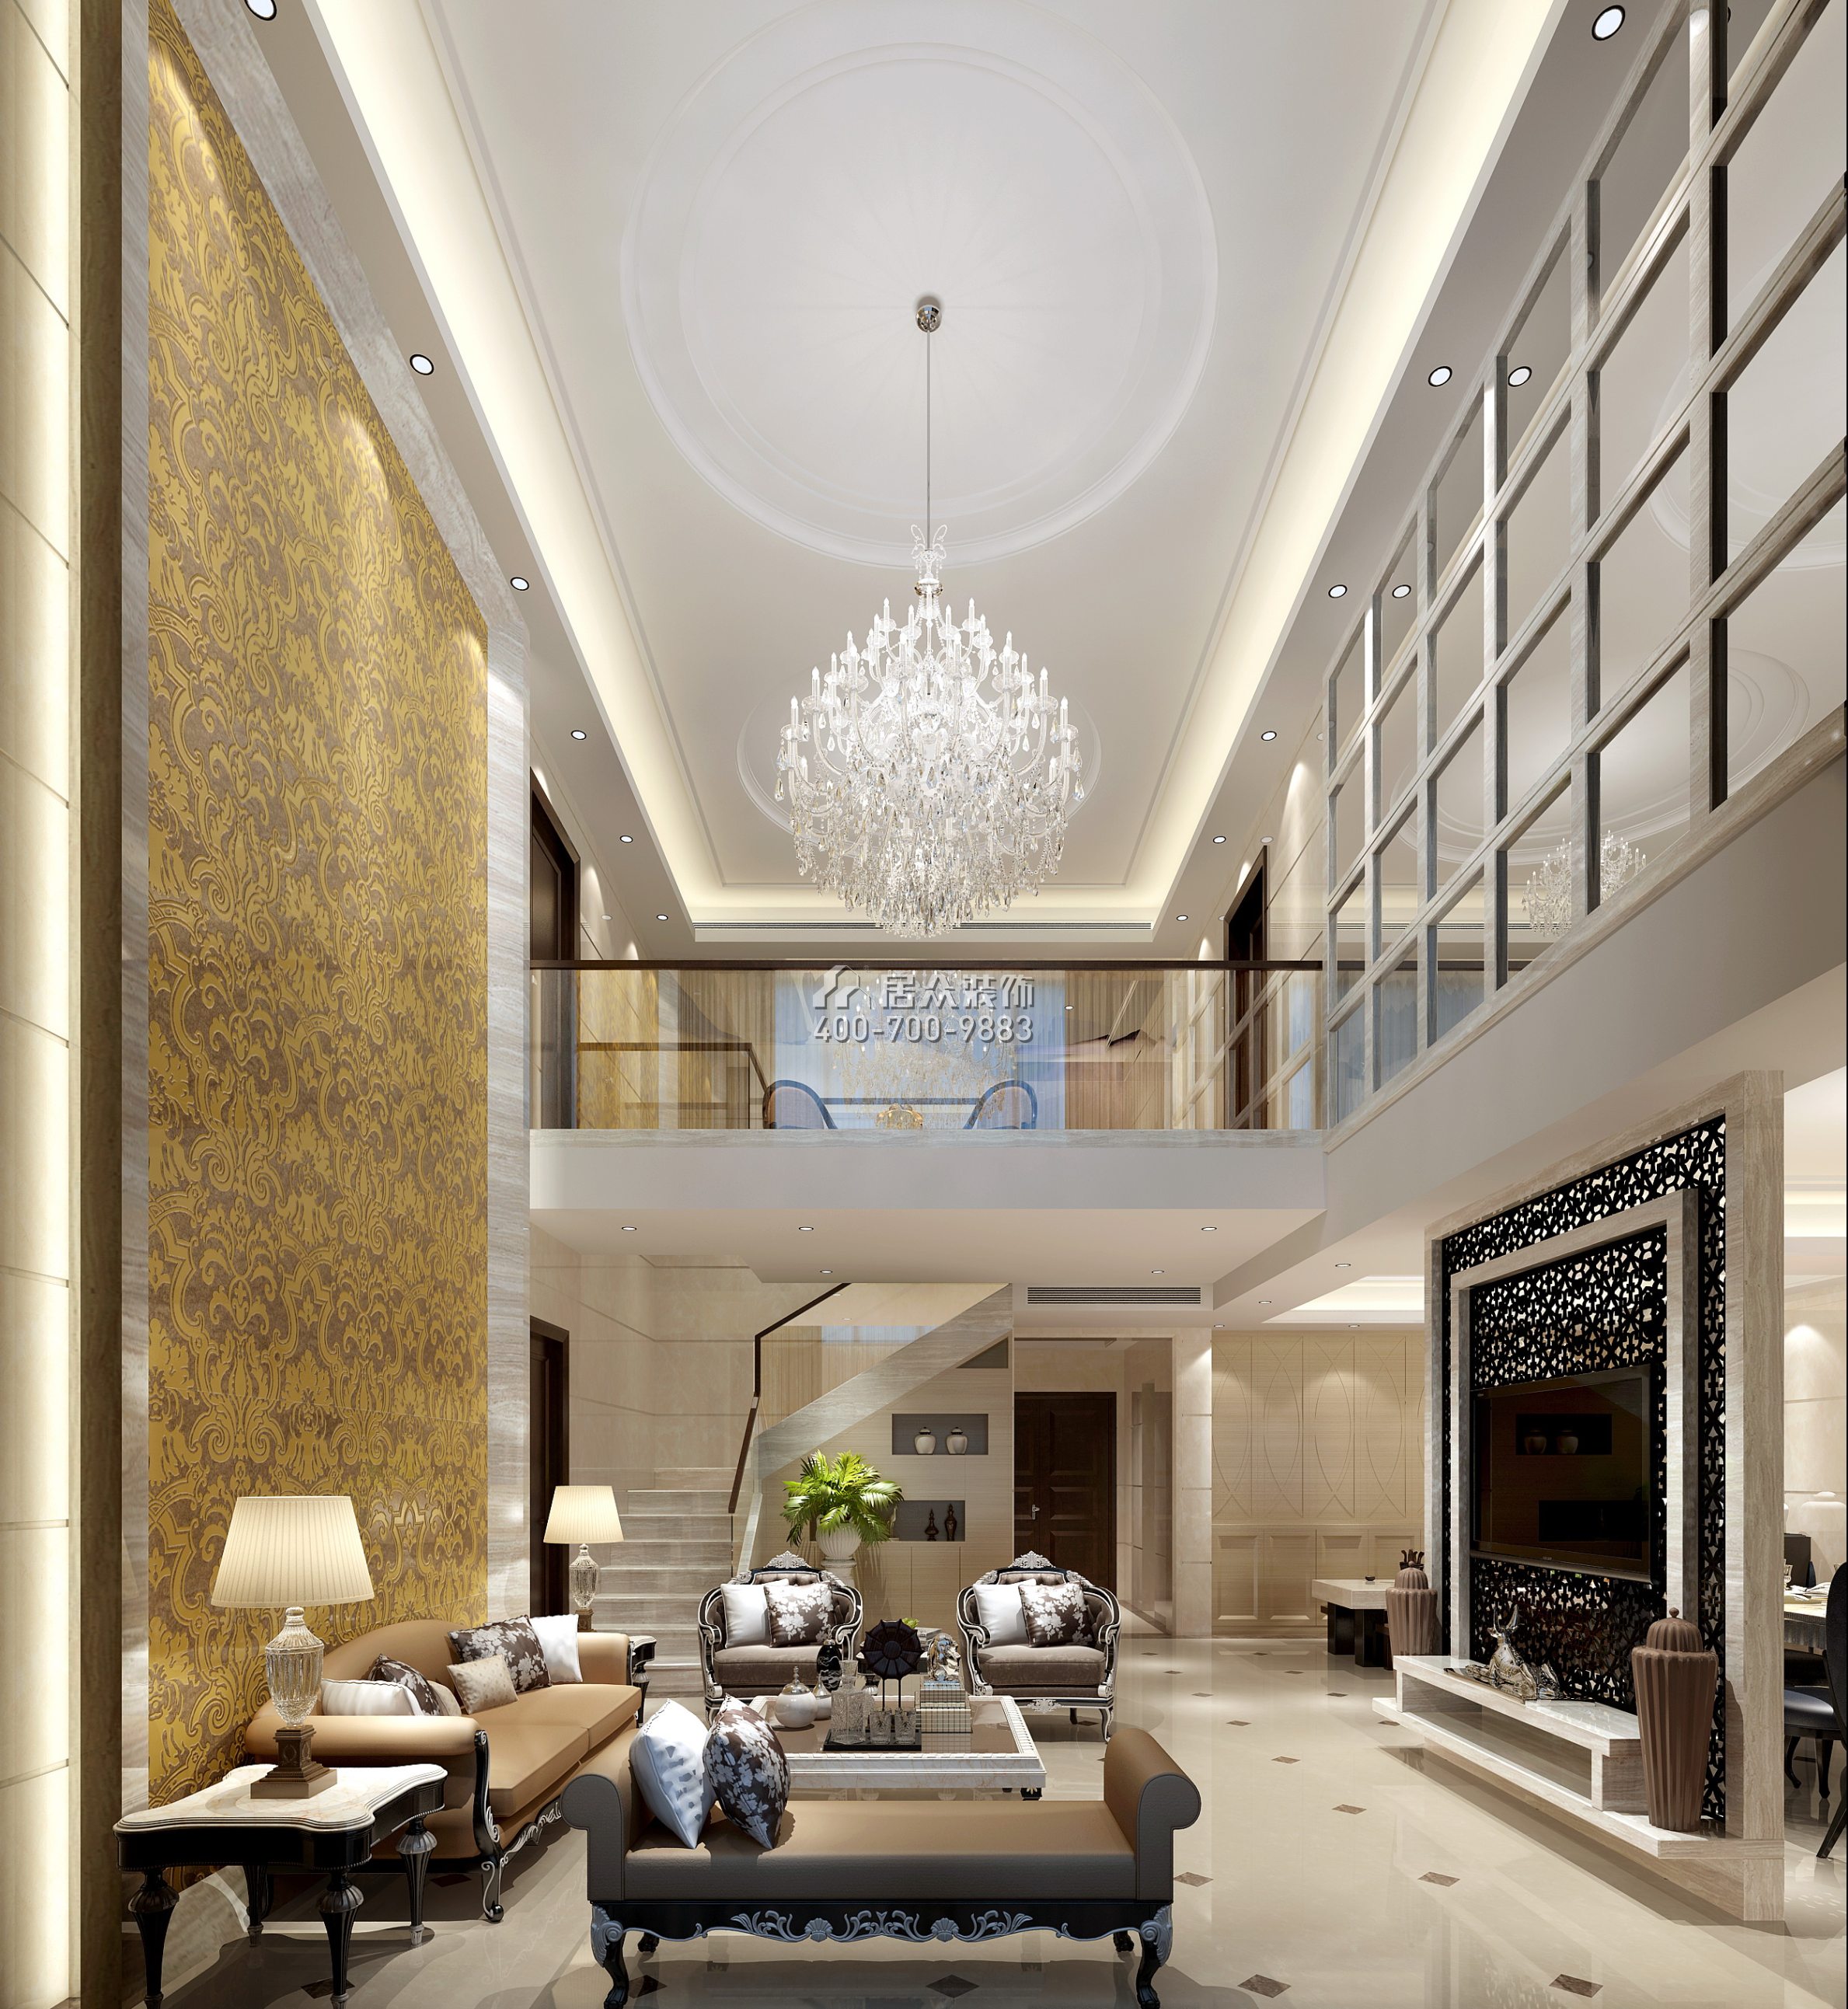 黄埔雅苑二期268平方米新古典风格复式户型客厅装修效果图